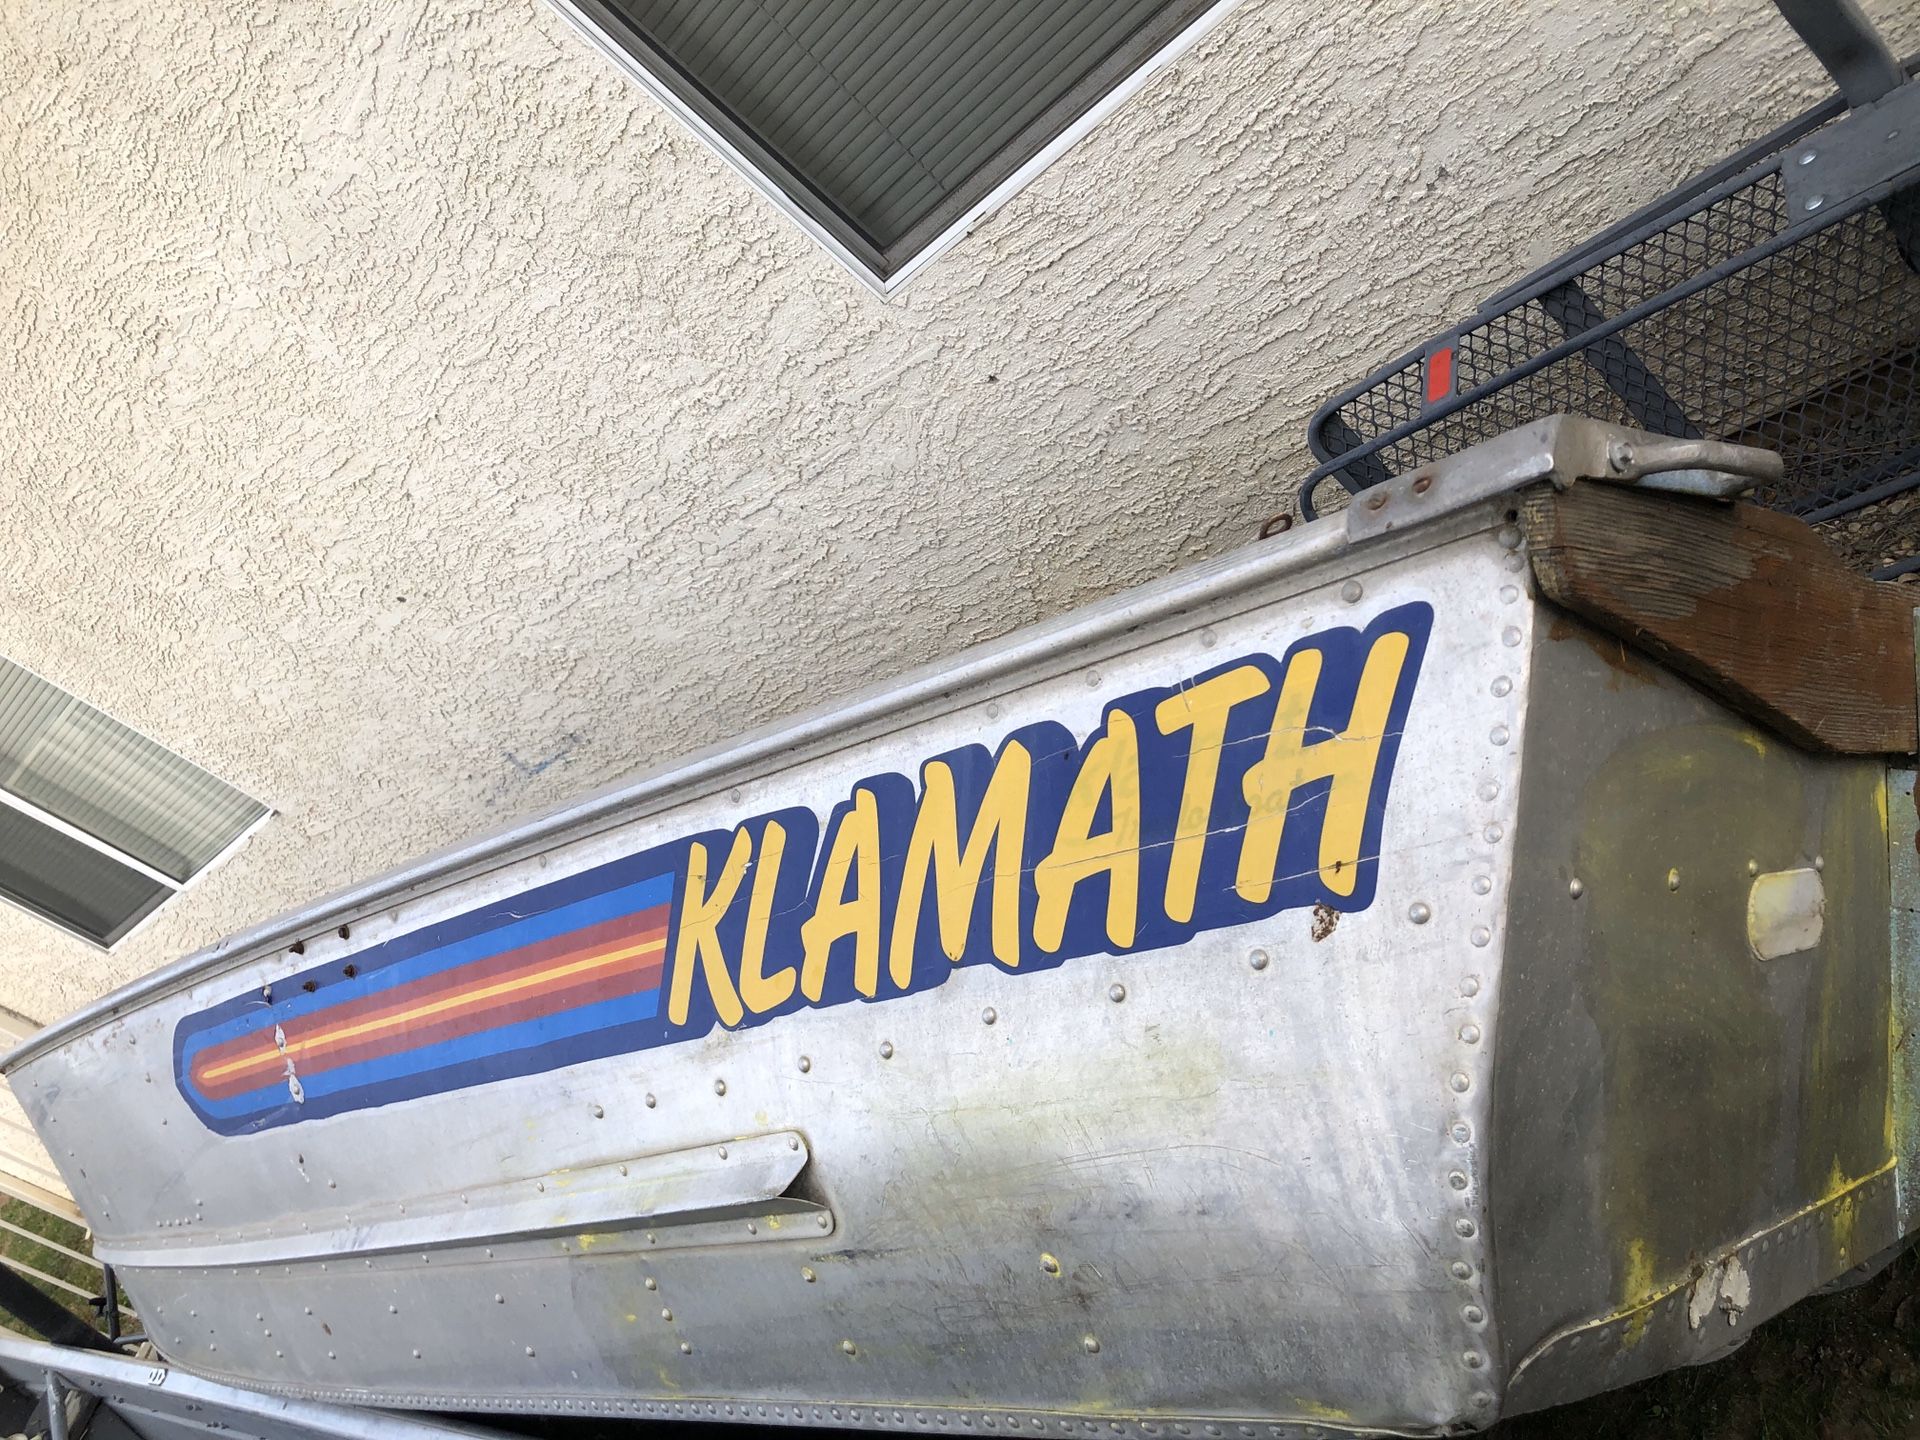 Klamath 12’ boat ****HAS HOLES NEEDS REPAIR****